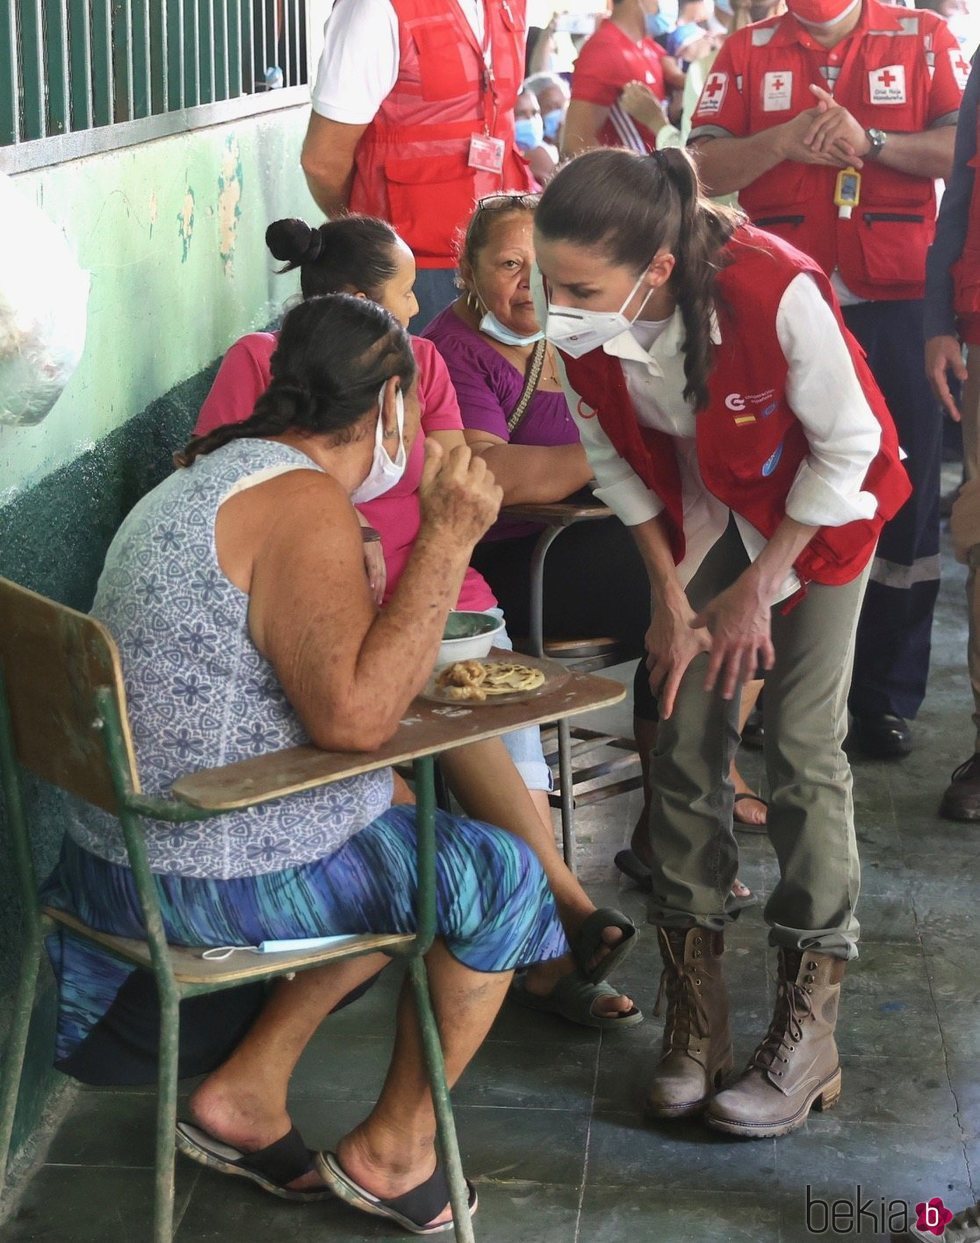 La Reina Letizia escucha el testimonio de una persona refugiada en un albergue en su viaje humanitario a Honduras